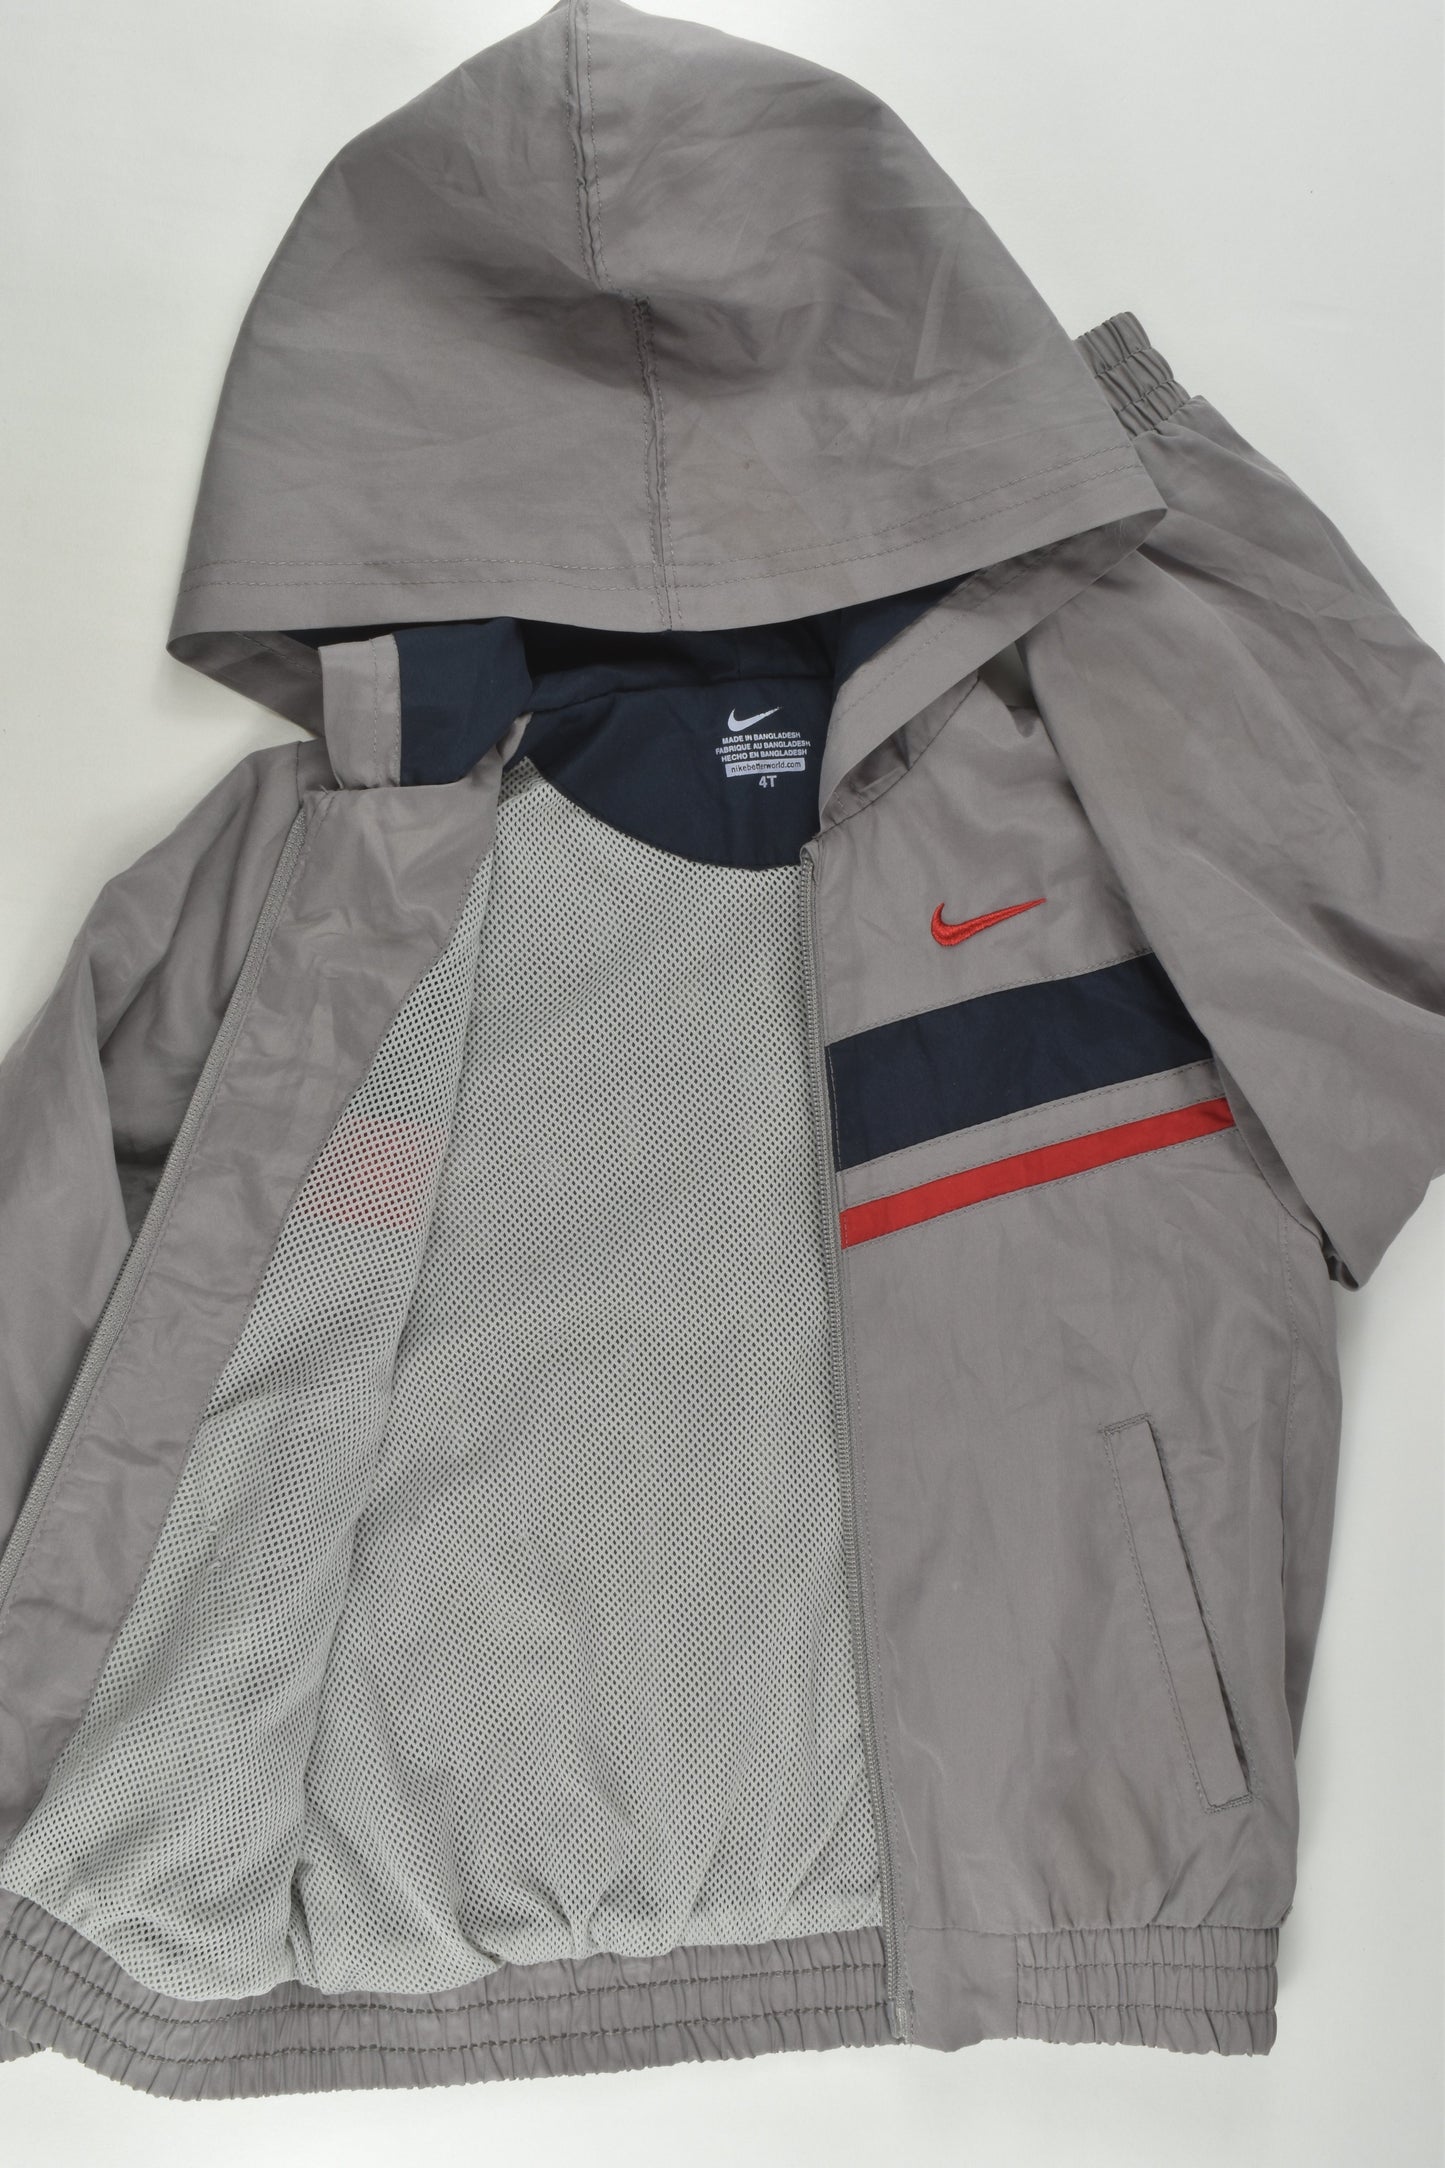 Nike Size 4 Jacket